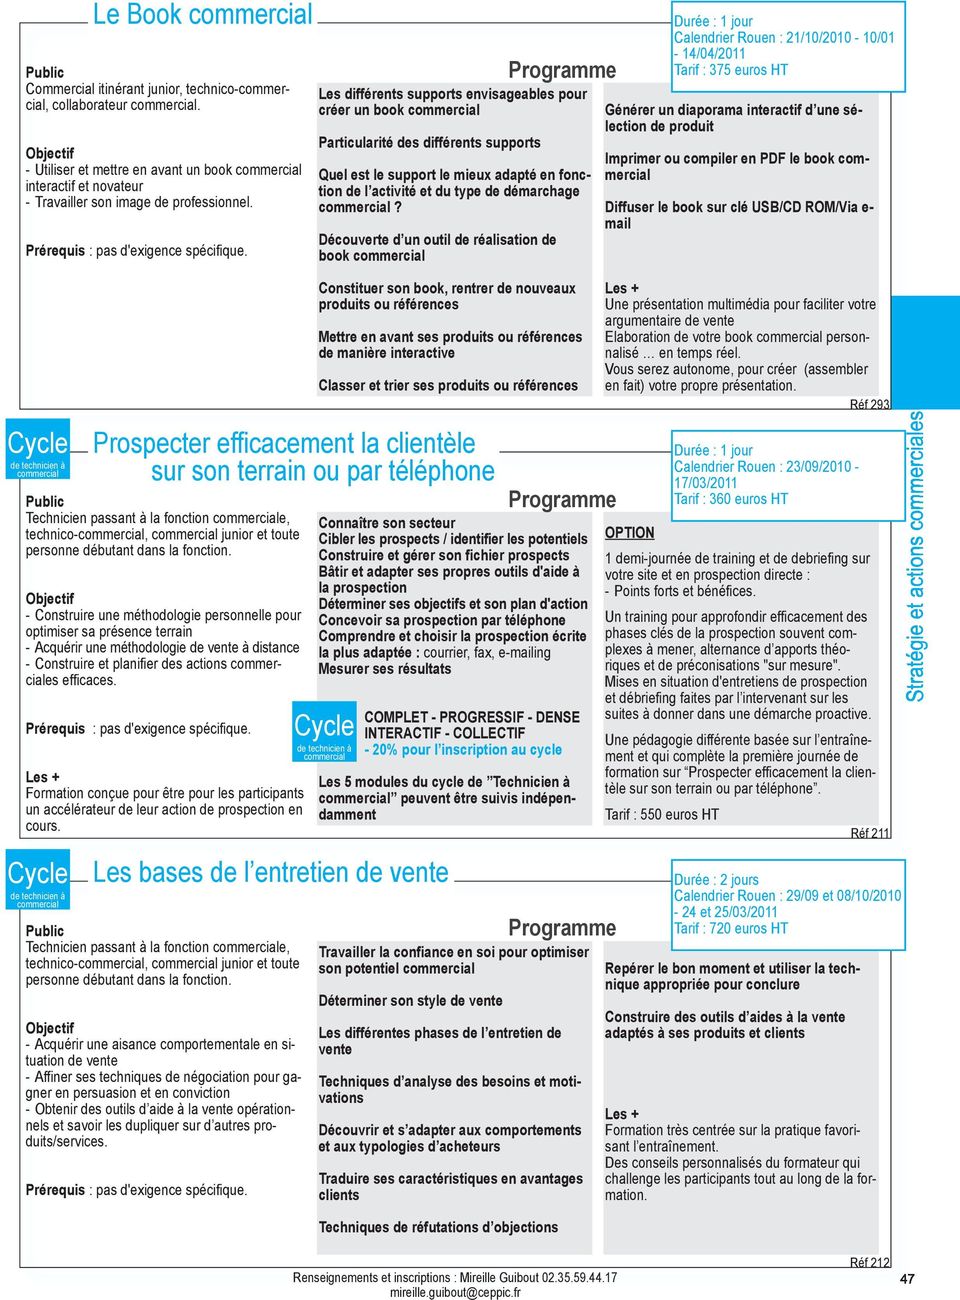 Découverte d un outil de réalisation de book Calendrier Rouen : 21/10/2010-10/01-14/04/2011 Générer un diaporama interactif d une sélection de produit Imprimer ou compiler en PDF le book Diffuser le